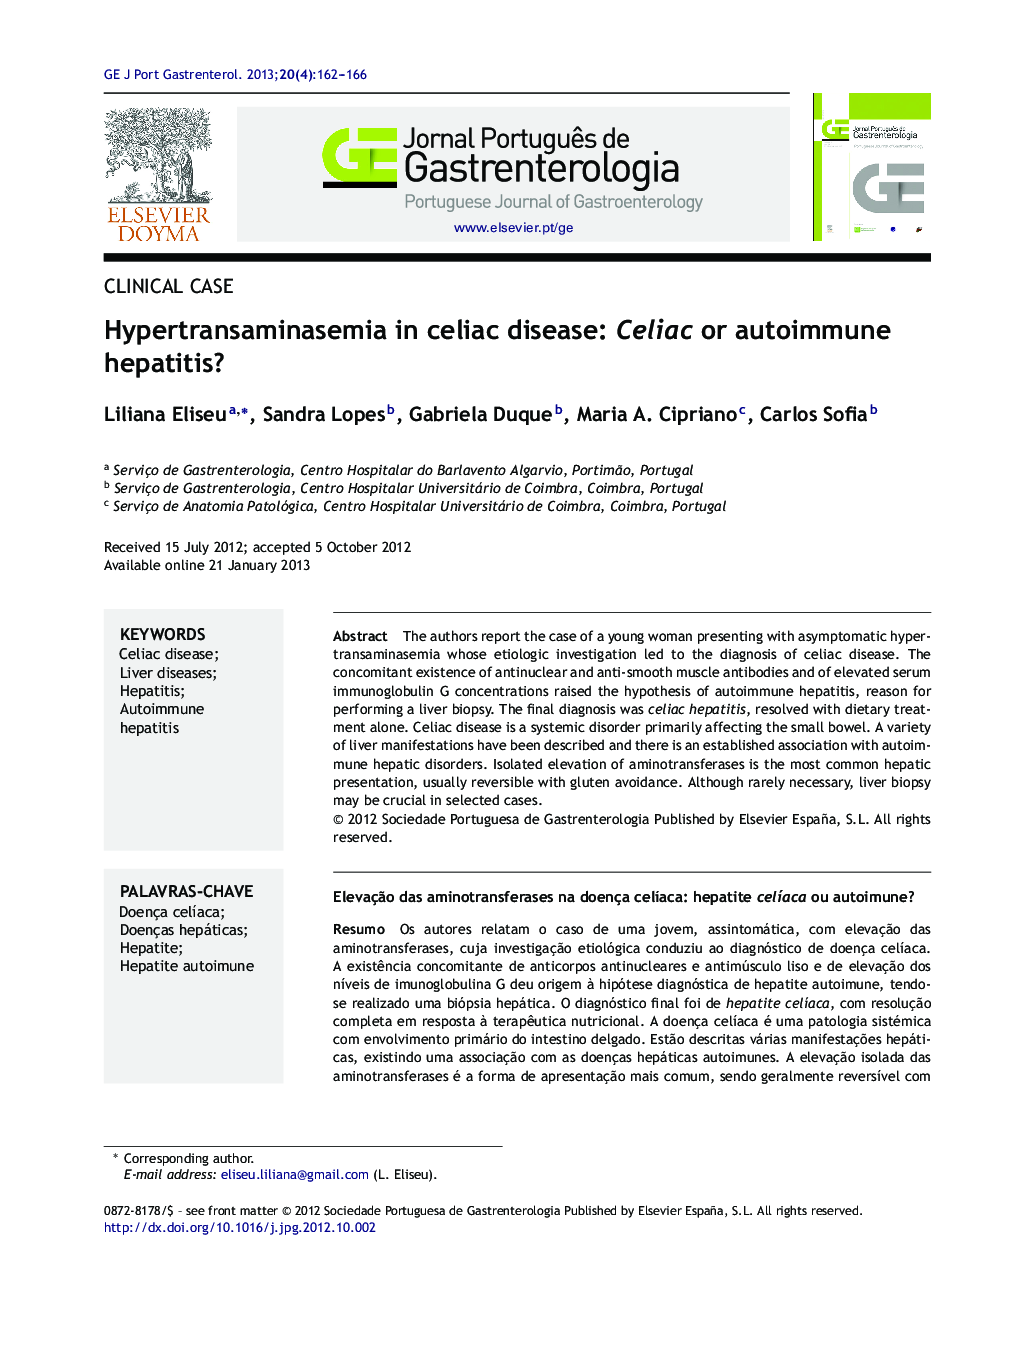 Hypertransaminasemia in celiac disease: Celiac or autoimmune hepatitis?